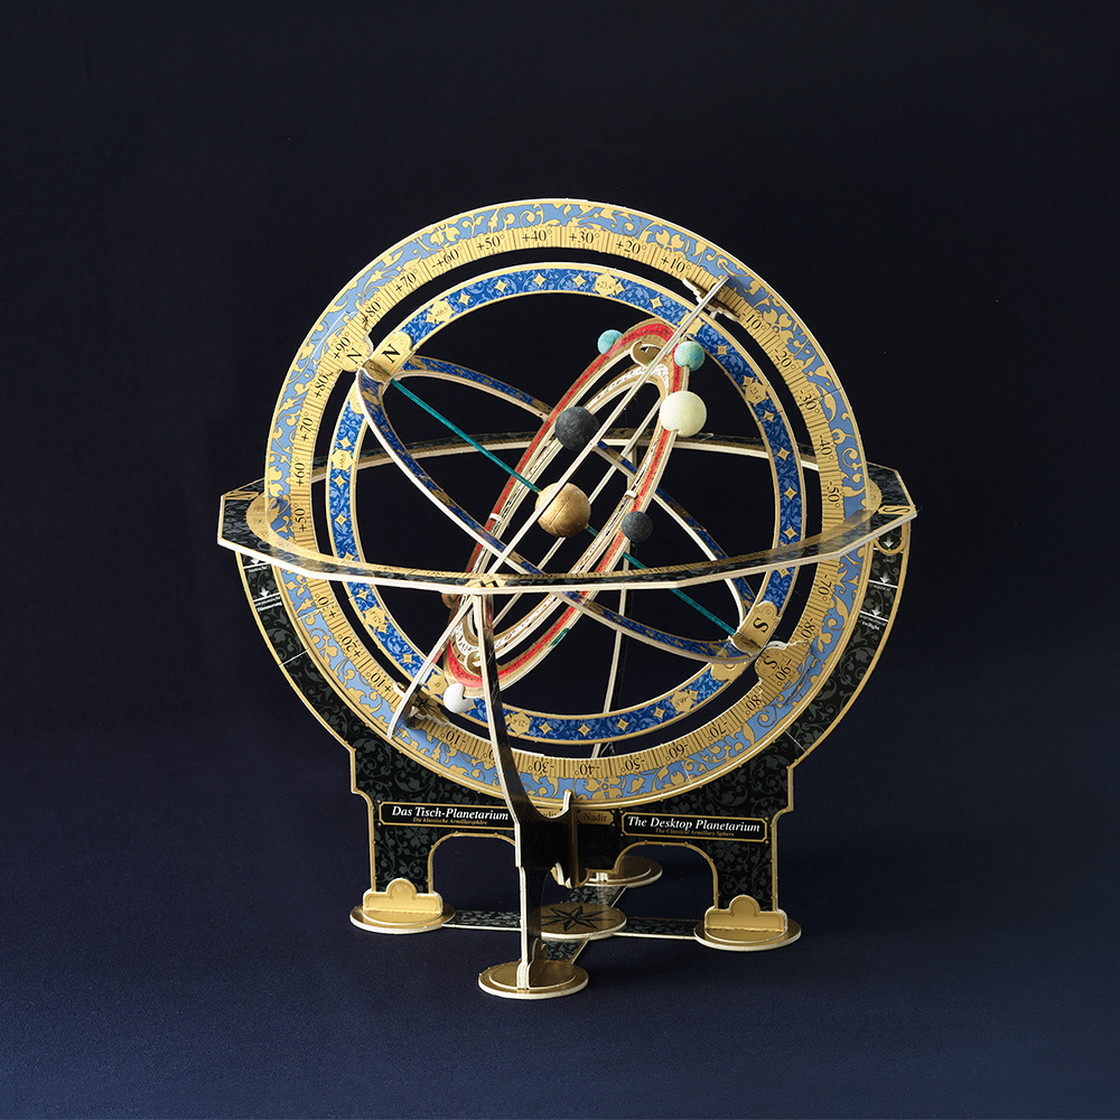 Das Tisch-Planetarium - AstroMedia